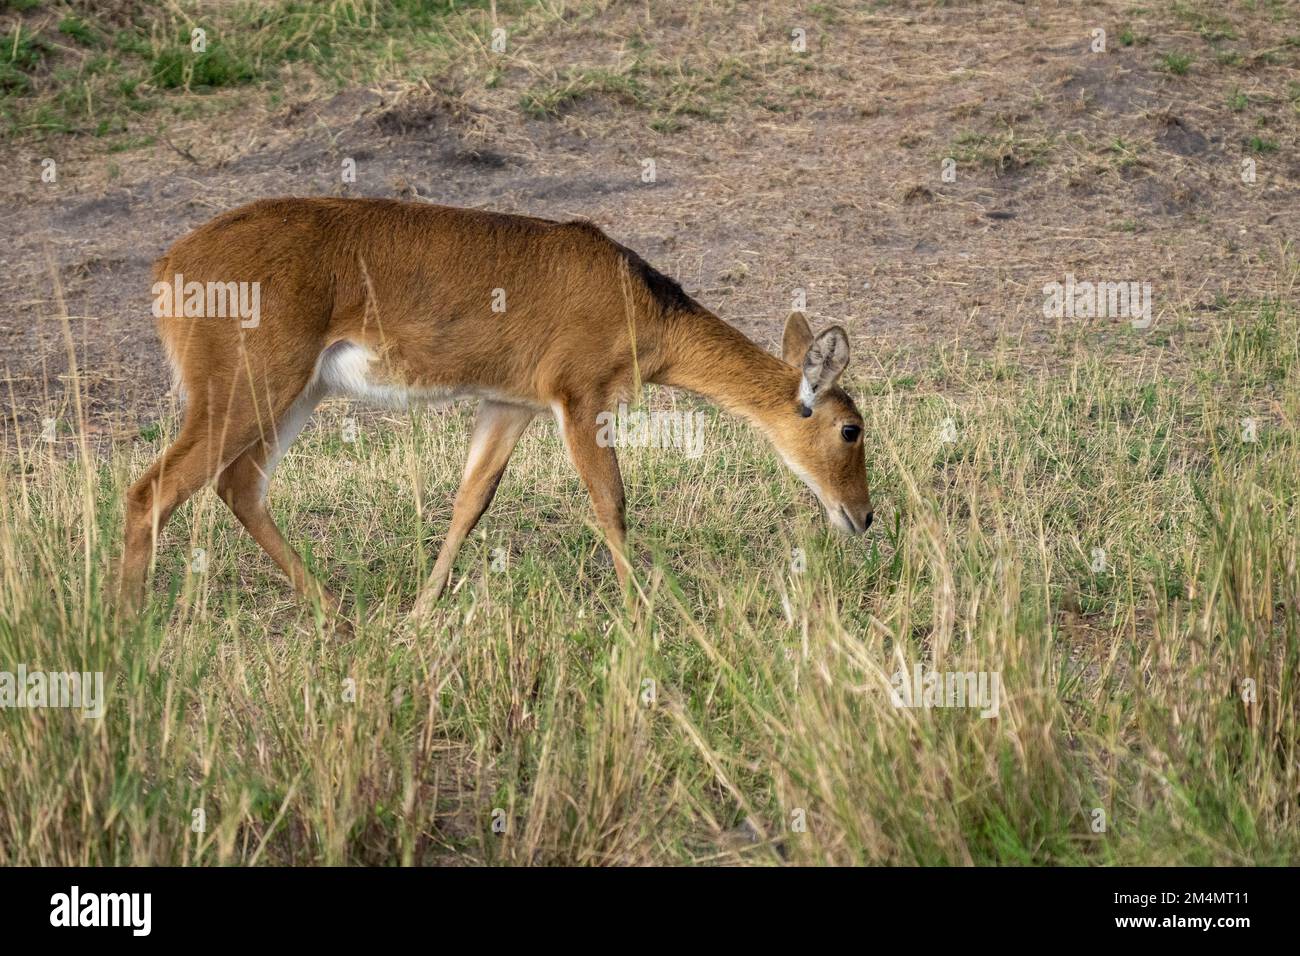 Weiblicher südlicher Schilf, Rietbok oder gemeiner Schilf (Redunca arundinum) ist eine tägliche Antilope, die typischerweise im südlichen Afrika zu finden ist. Es war das erste Mal Stockfoto